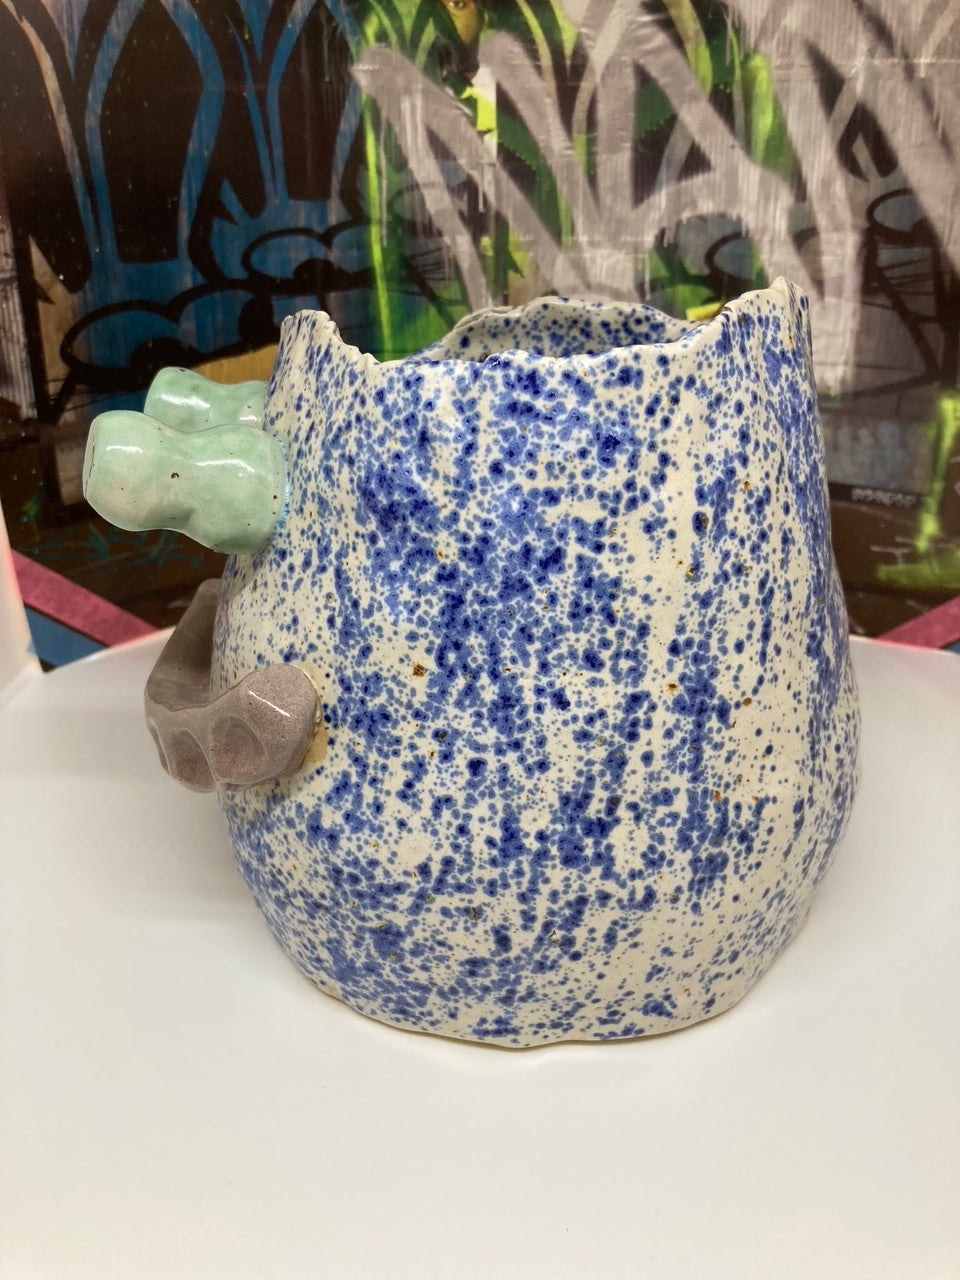 Face Vase: Not feeling blue (but speckled)